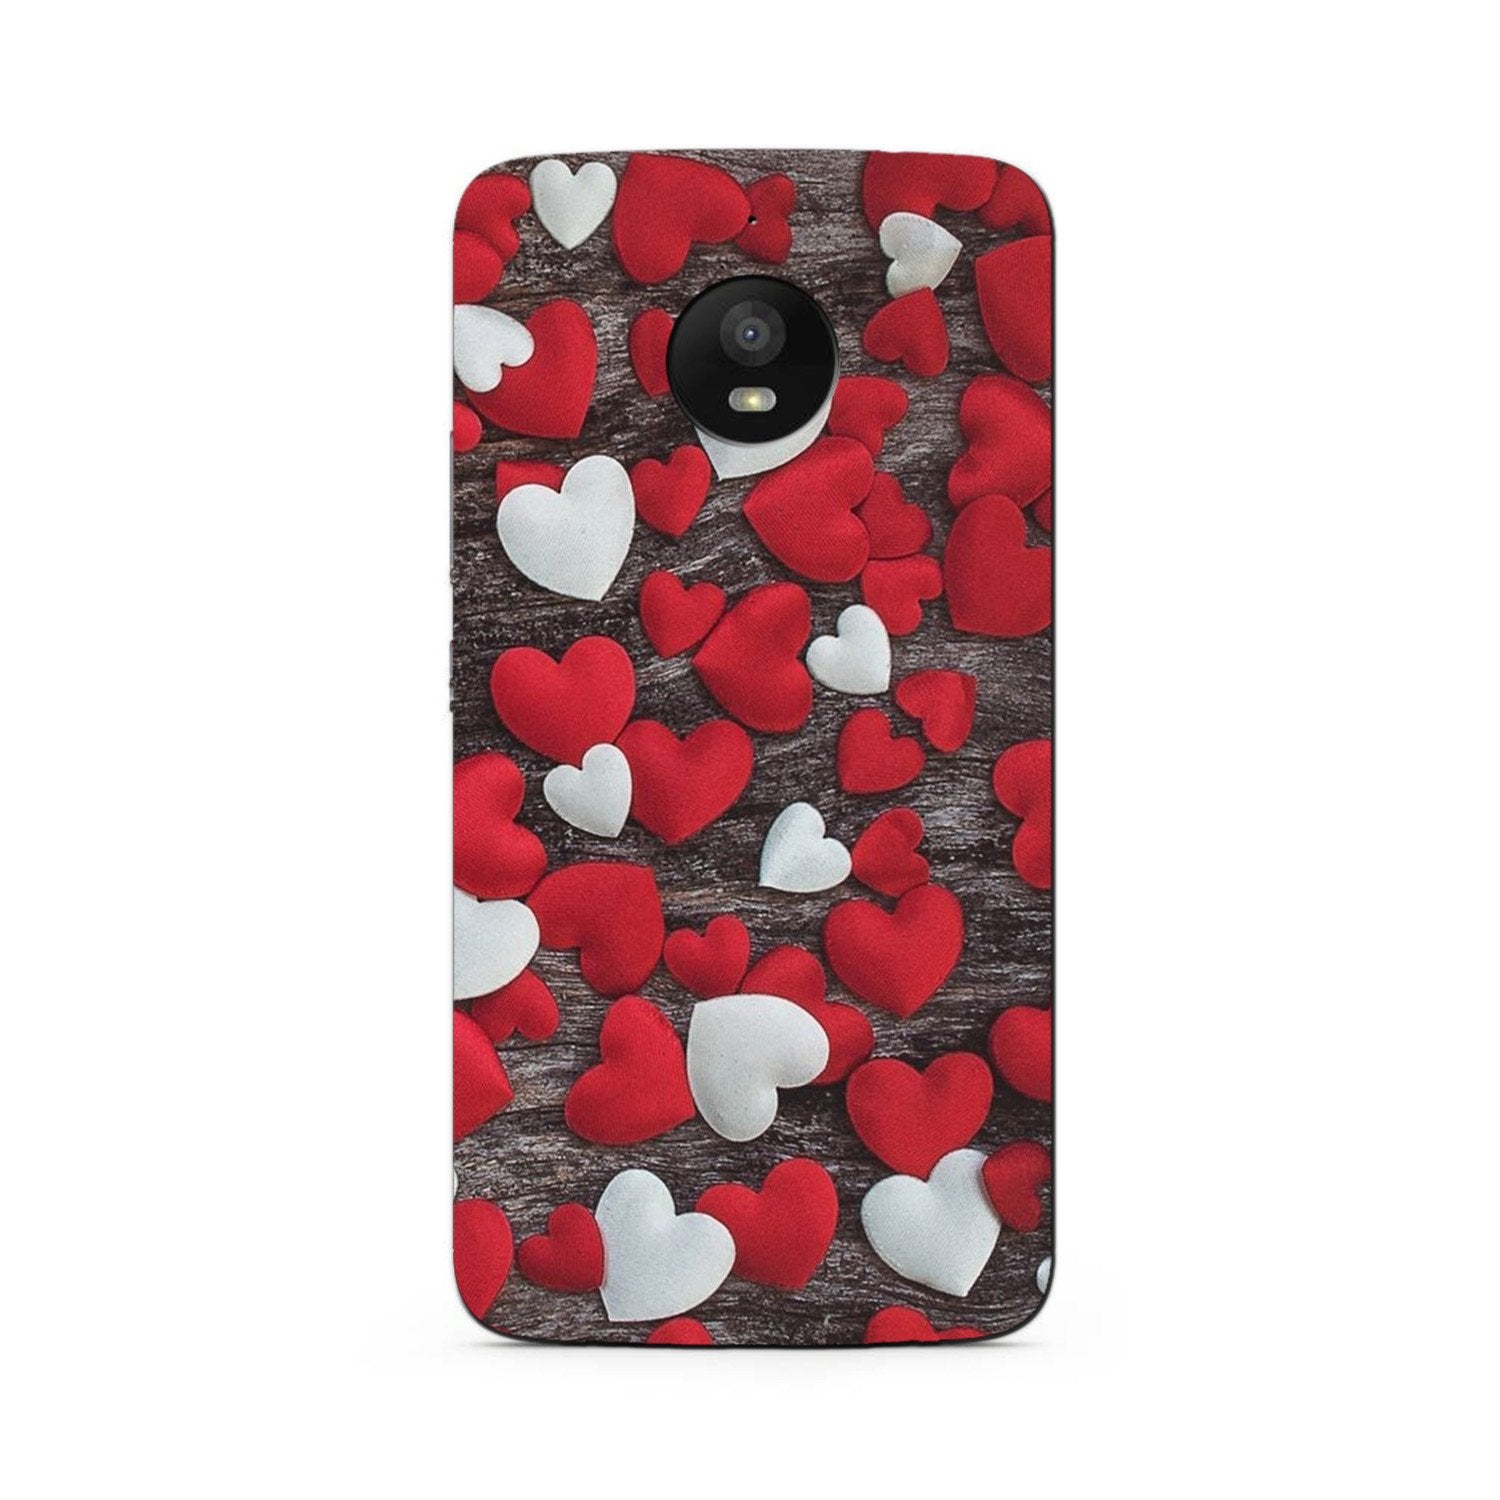 Red White Hearts Case for Moto G5s Plus(Design - 105)